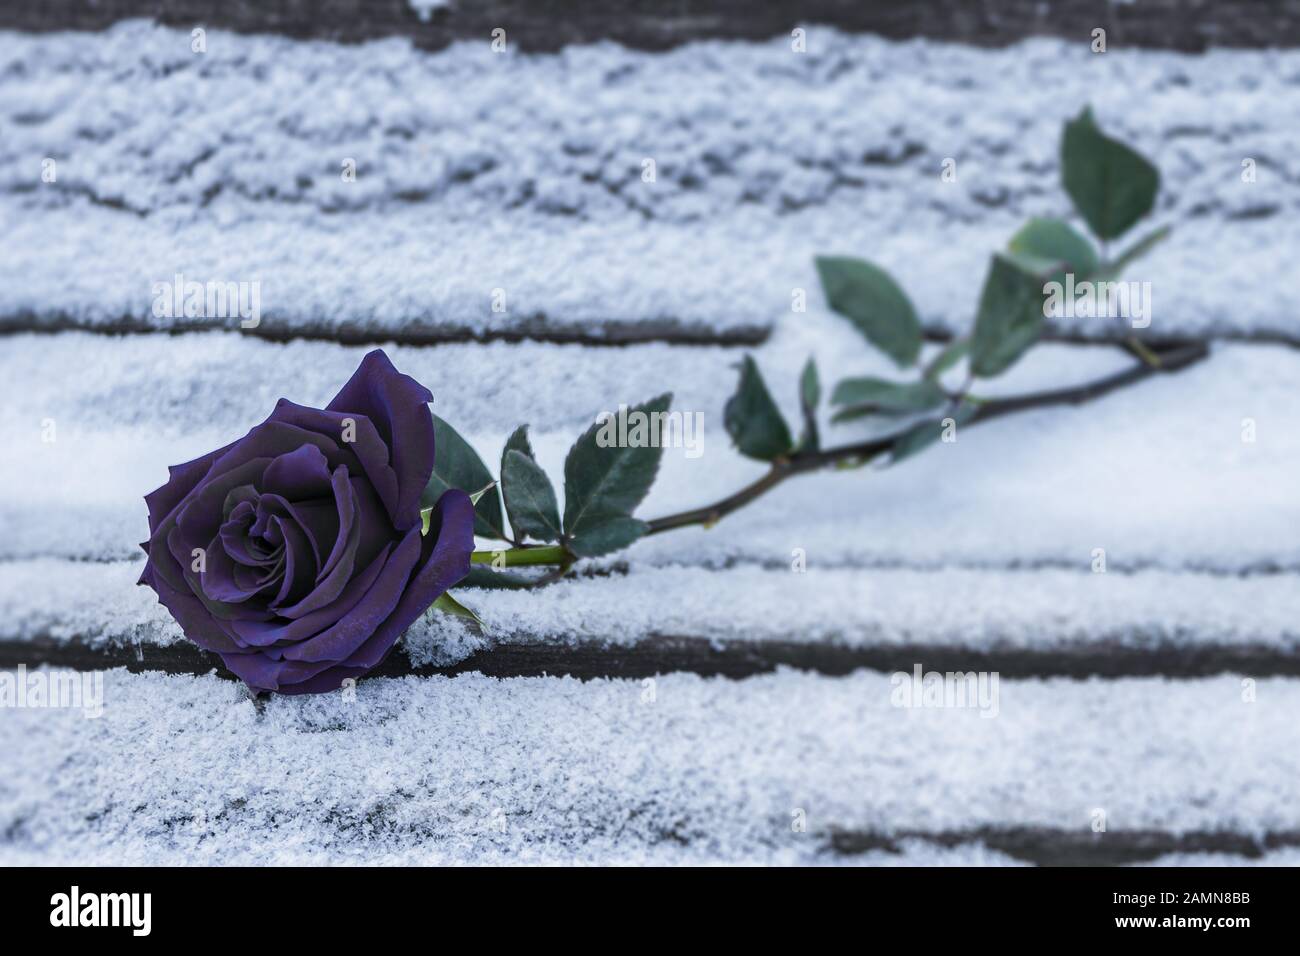 Eine schwarze Rose liegt im Schnee auf einer Bank im kalten Winter.  Schwarze Rose im Winter als Symbol der Trennung und Trauer Stockfotografie  - Alamy